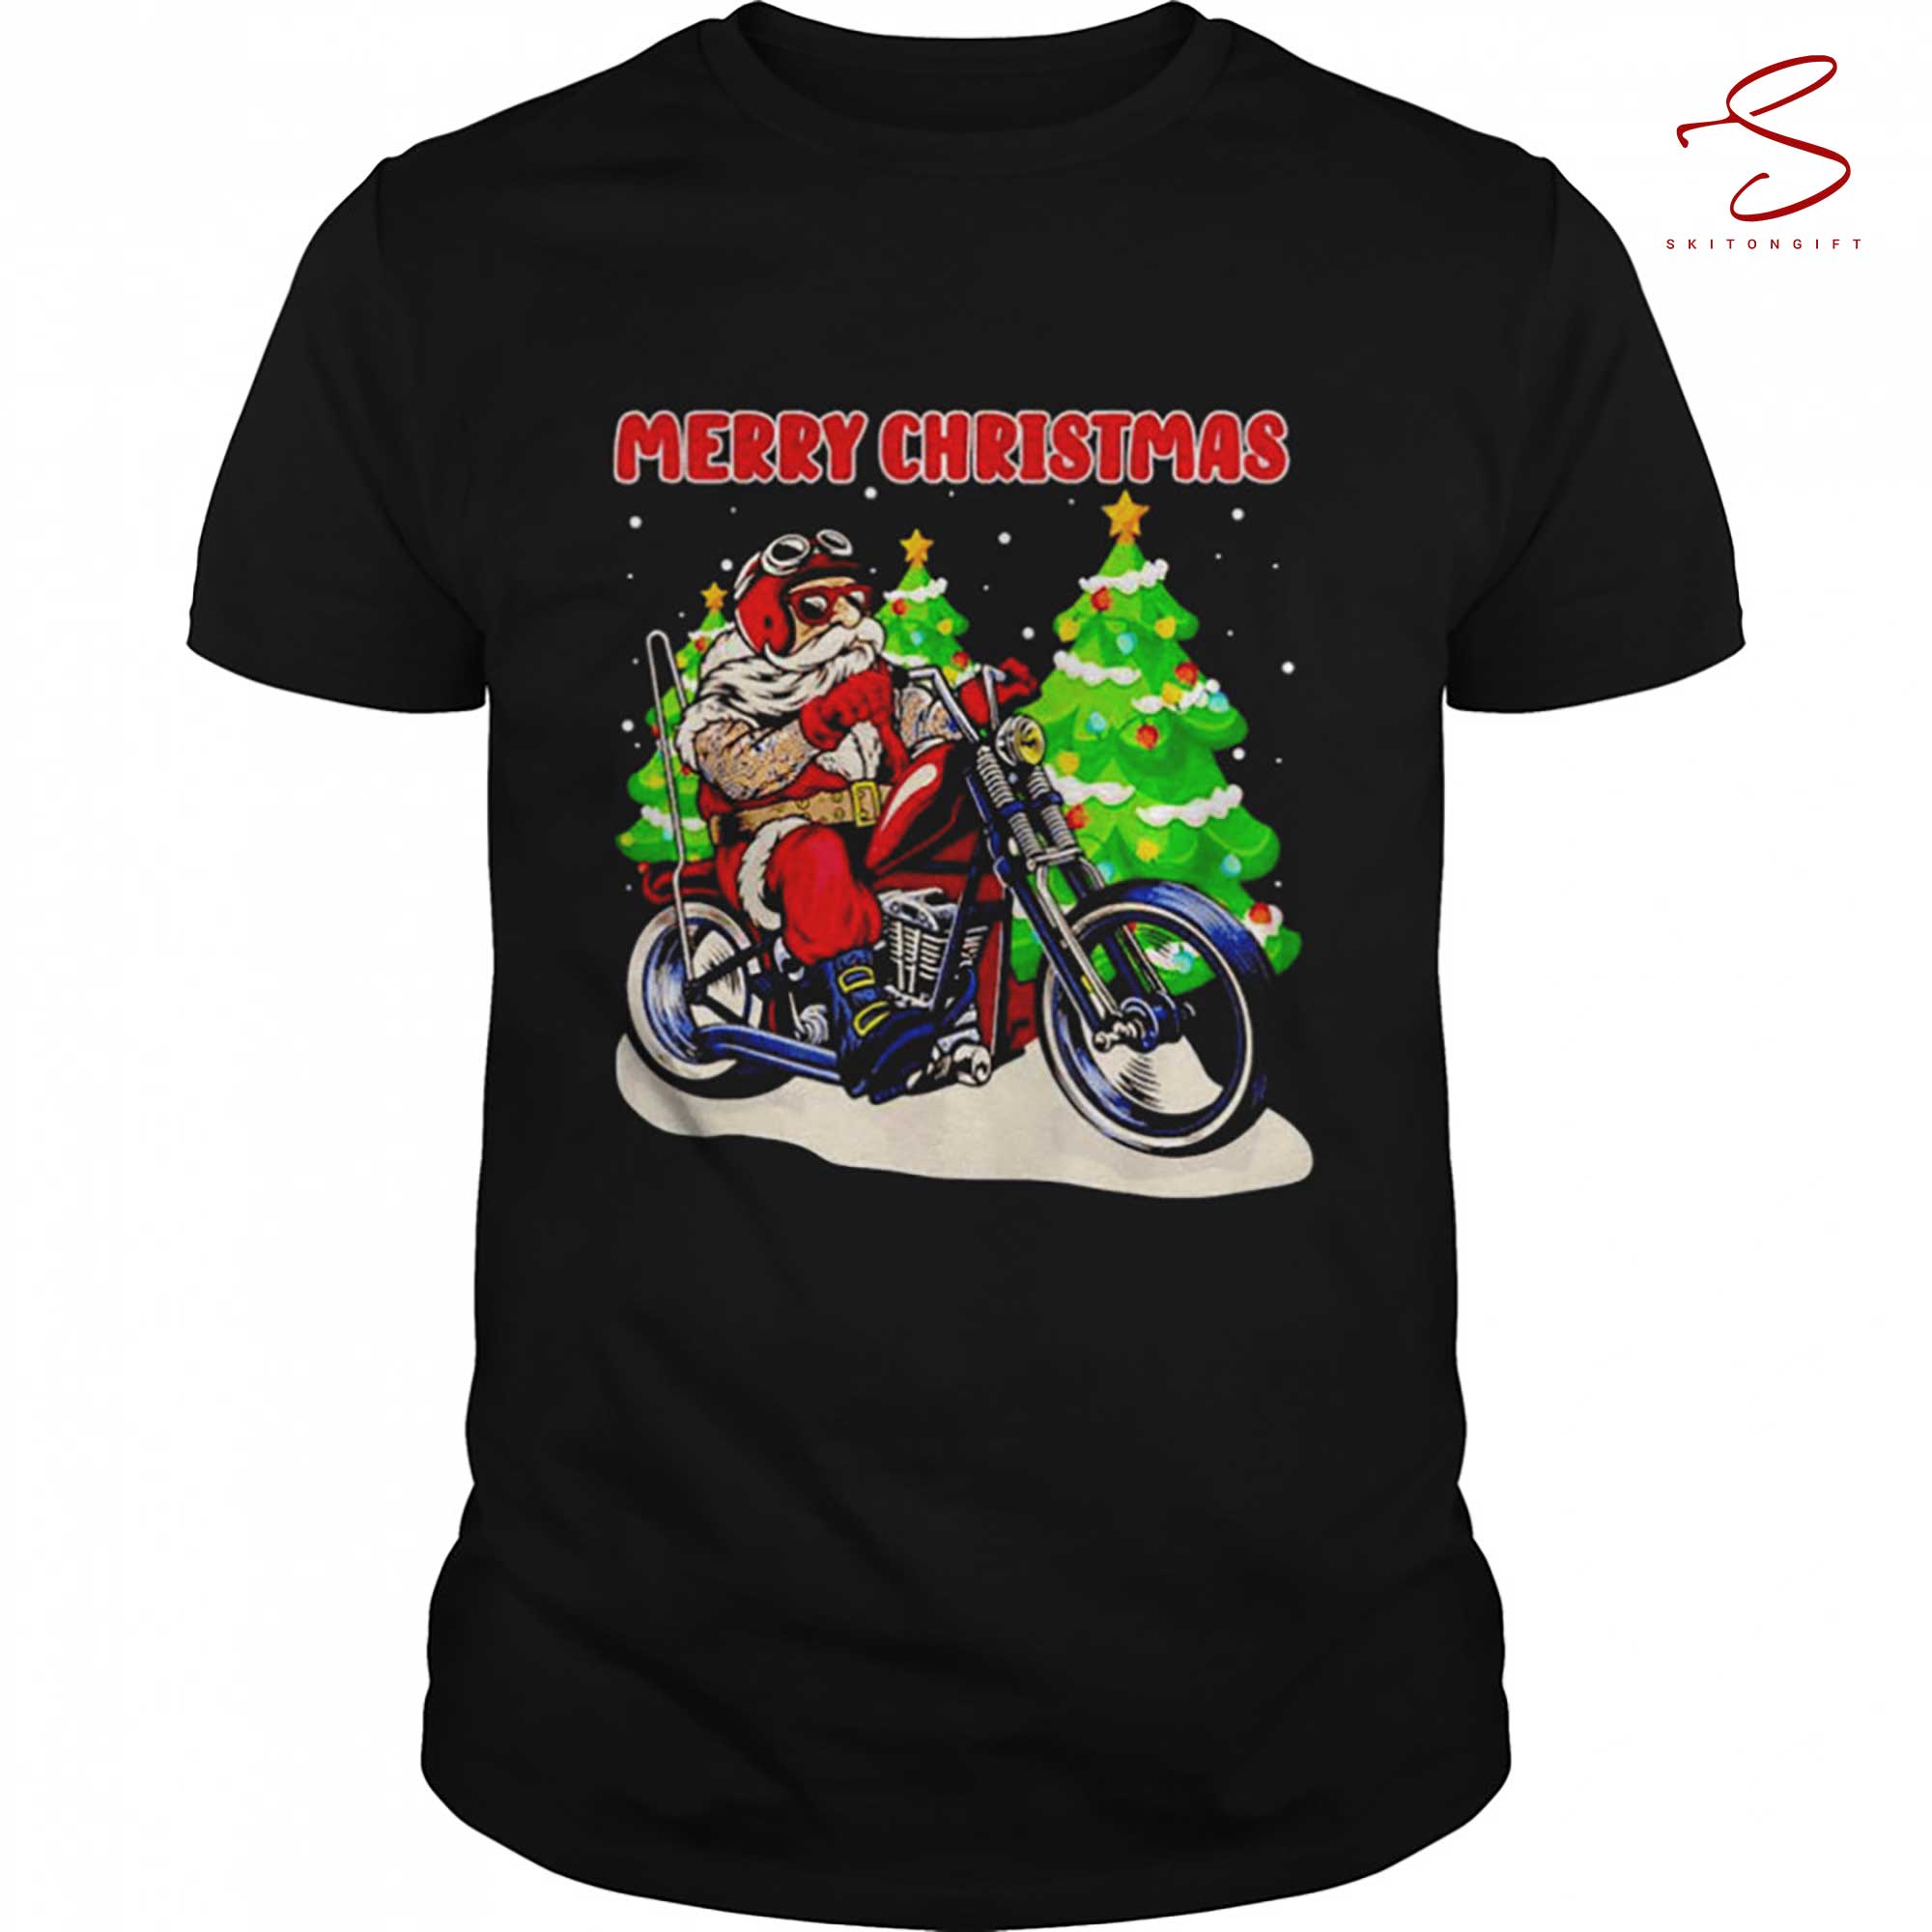 Skitongift Santa On Motorcycle Christmas Shirt